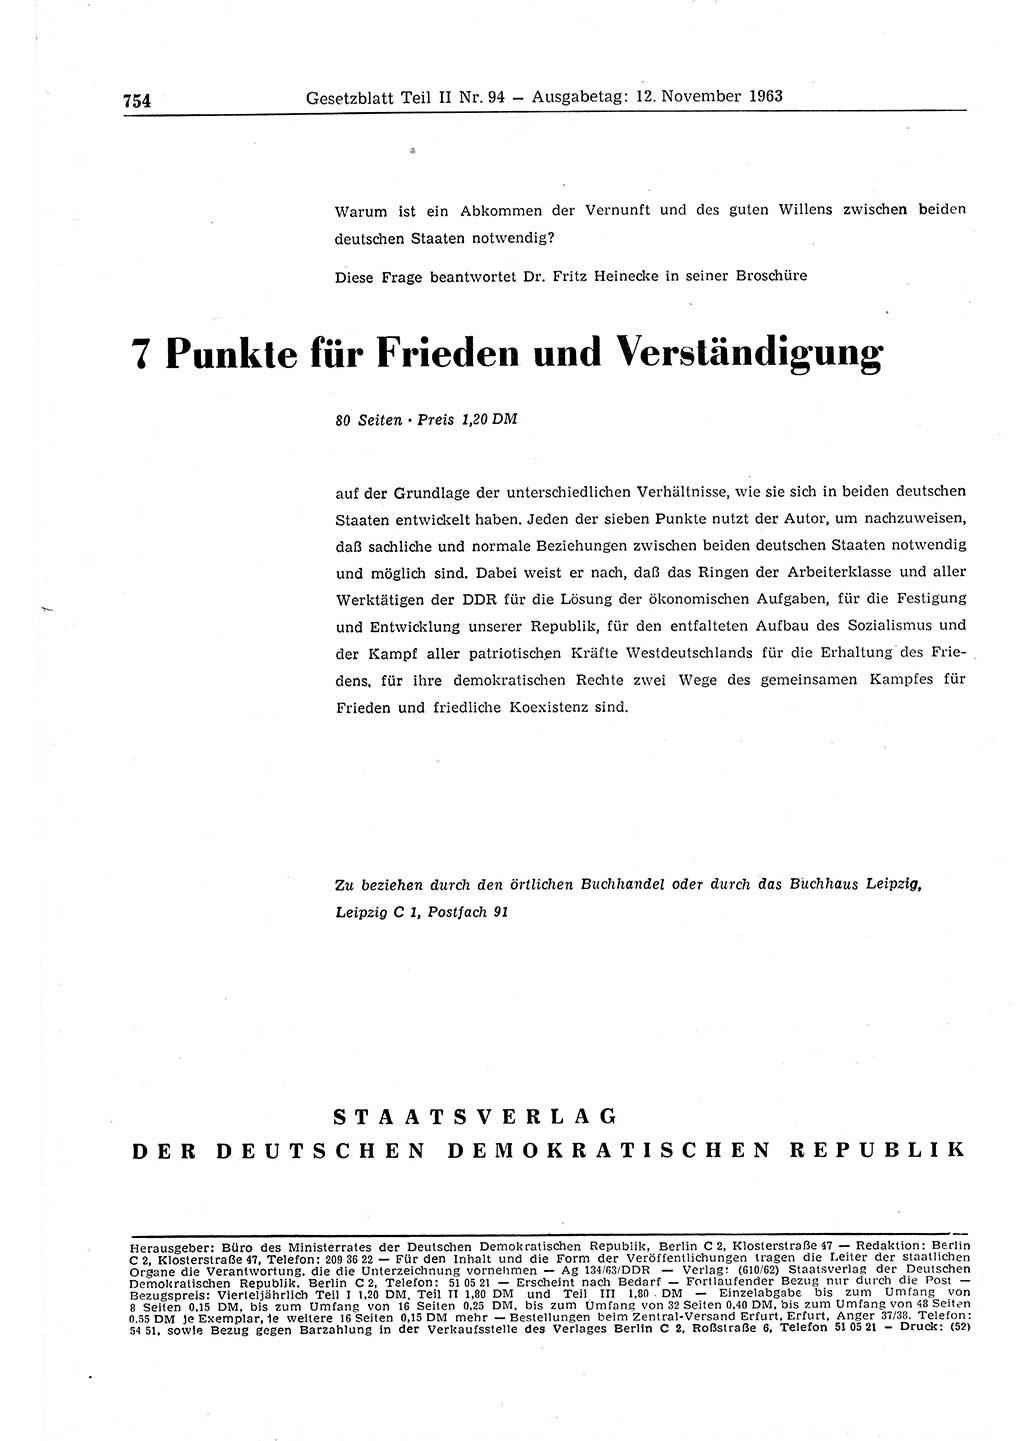 Gesetzblatt (GBl.) der Deutschen Demokratischen Republik (DDR) Teil ⅠⅠ 1963, Seite 754 (GBl. DDR ⅠⅠ 1963, S. 754)